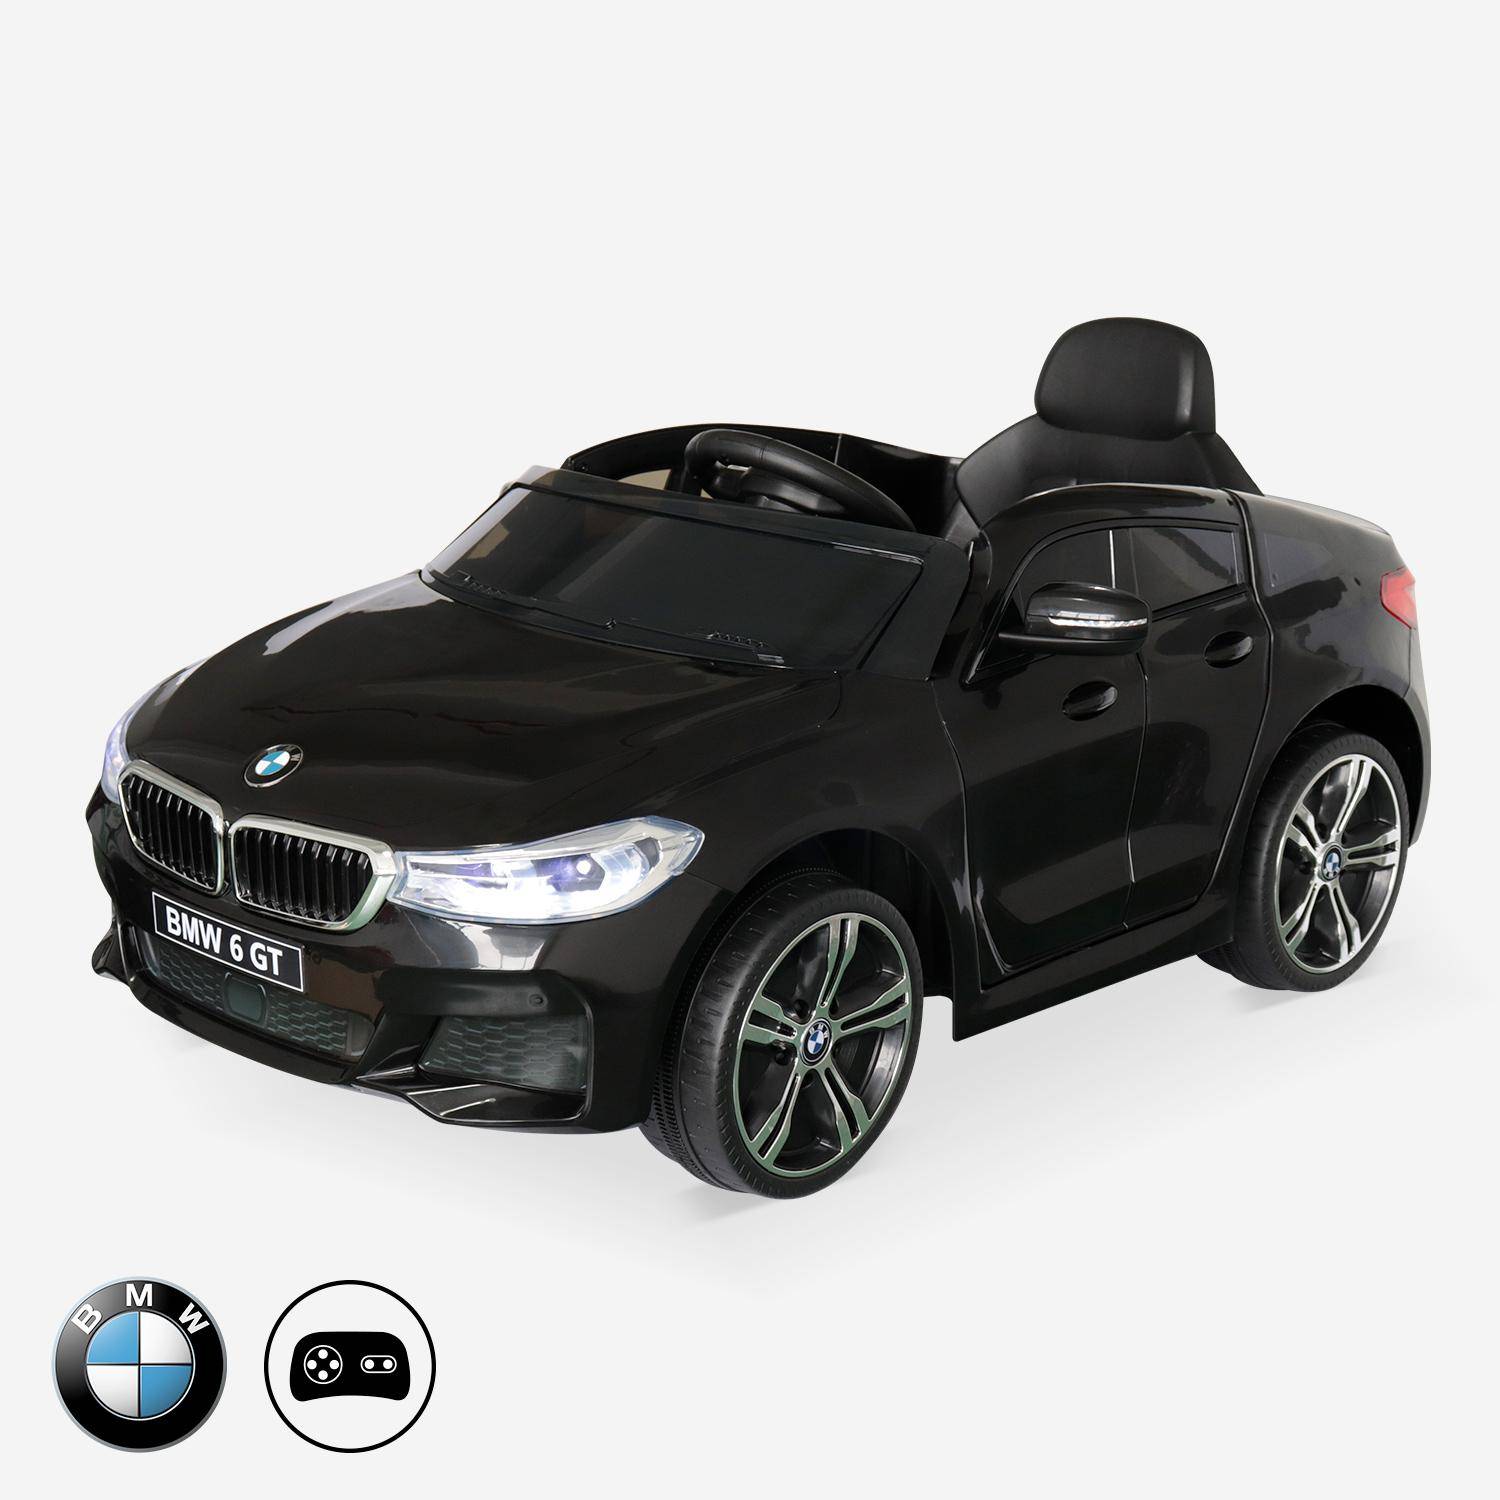 BMW Serie 6 GT Gran Turismo nera, auto elettrica per bambini 12V 4 Ah, 1 posto, con autoradio e telecomando,sweeek,Photo1